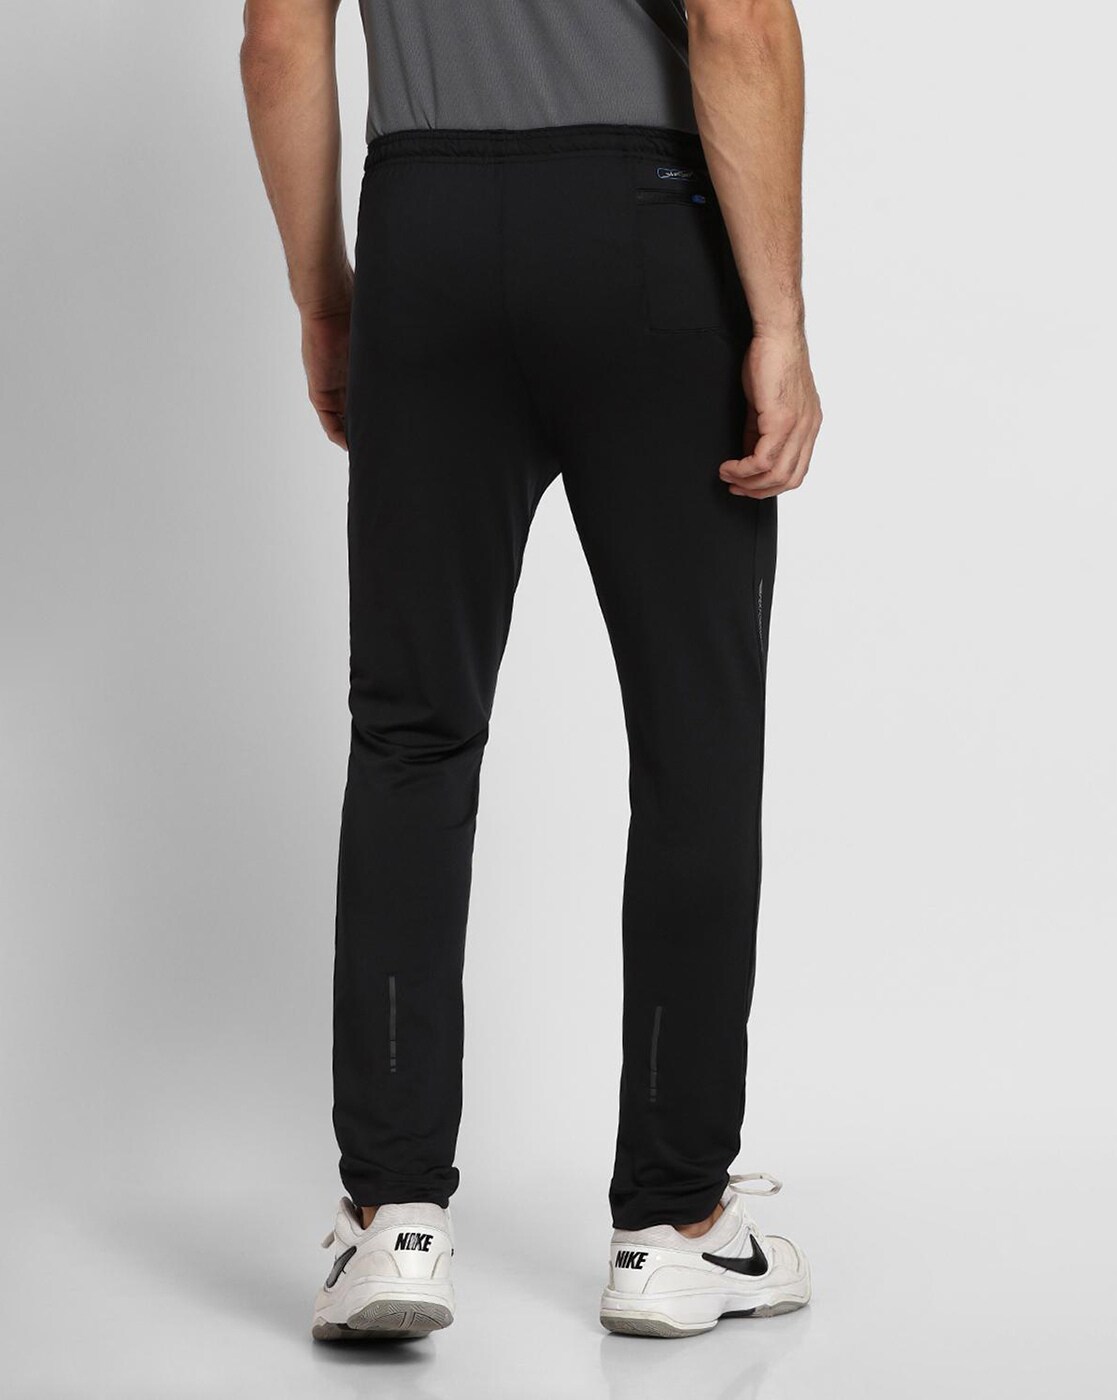 Nike Flex Swift Dri-fit Running Pants